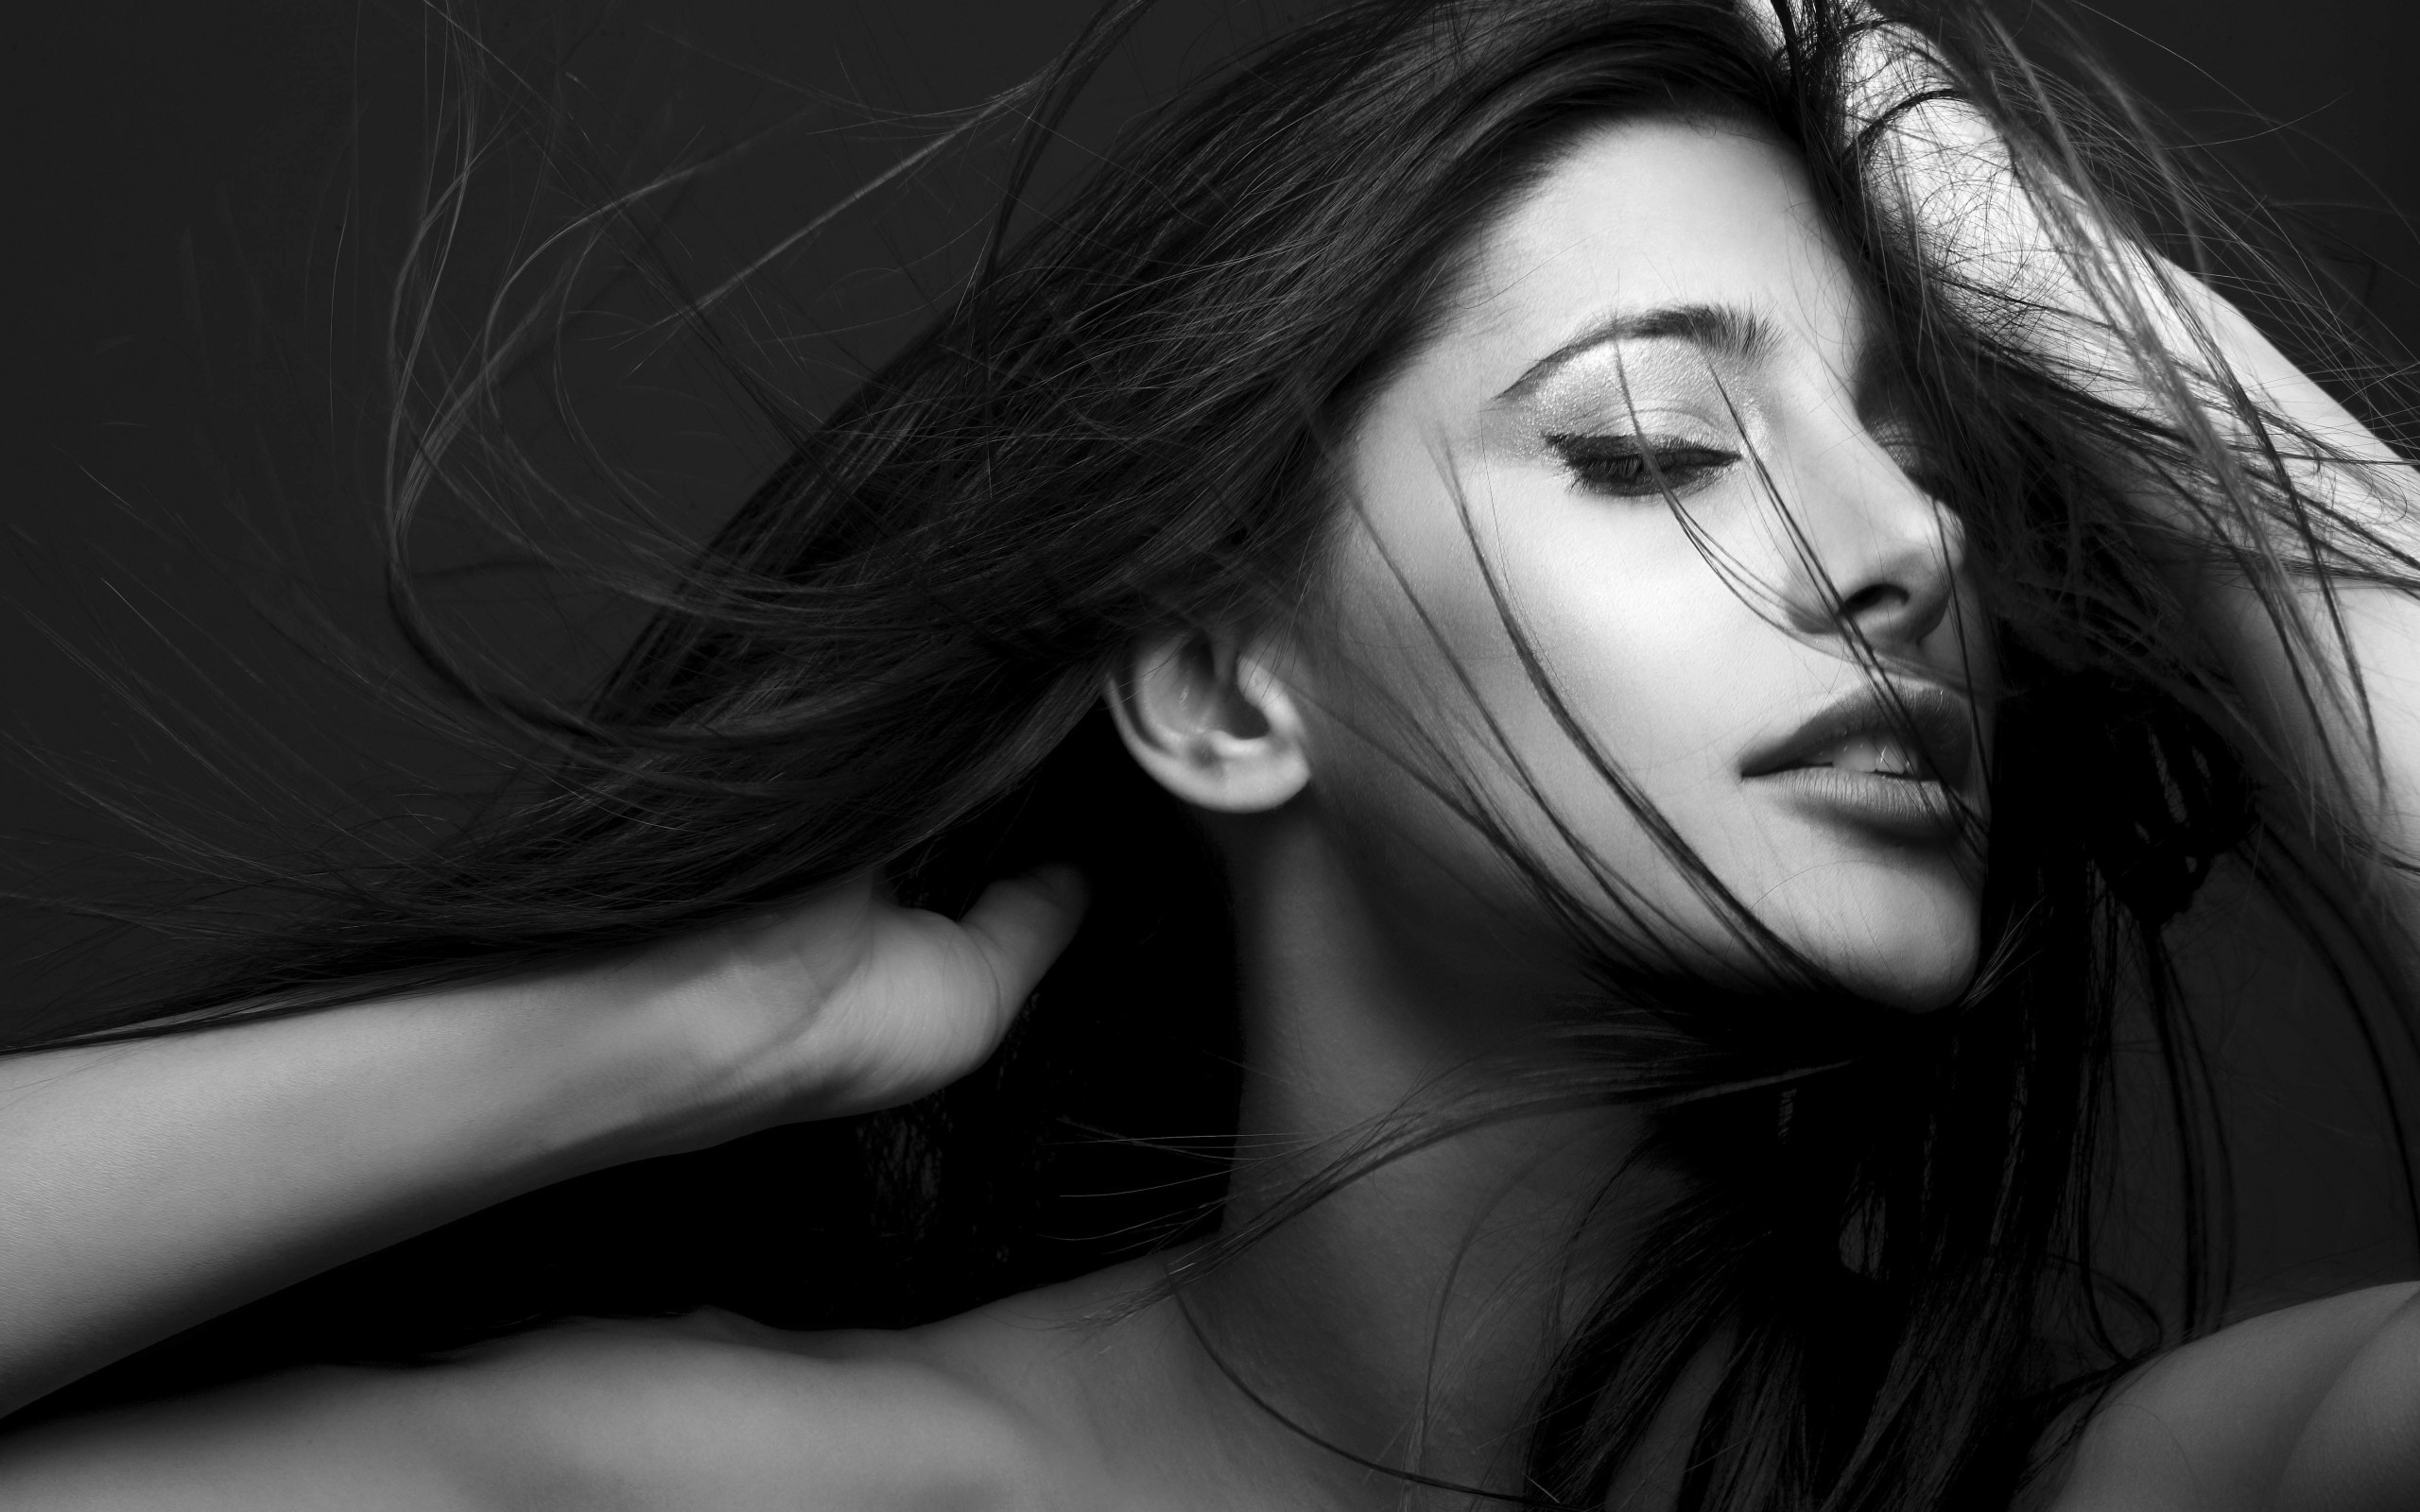 nargis fakhri Bollywood actress hot and sexy wallpapers | Free HD ...